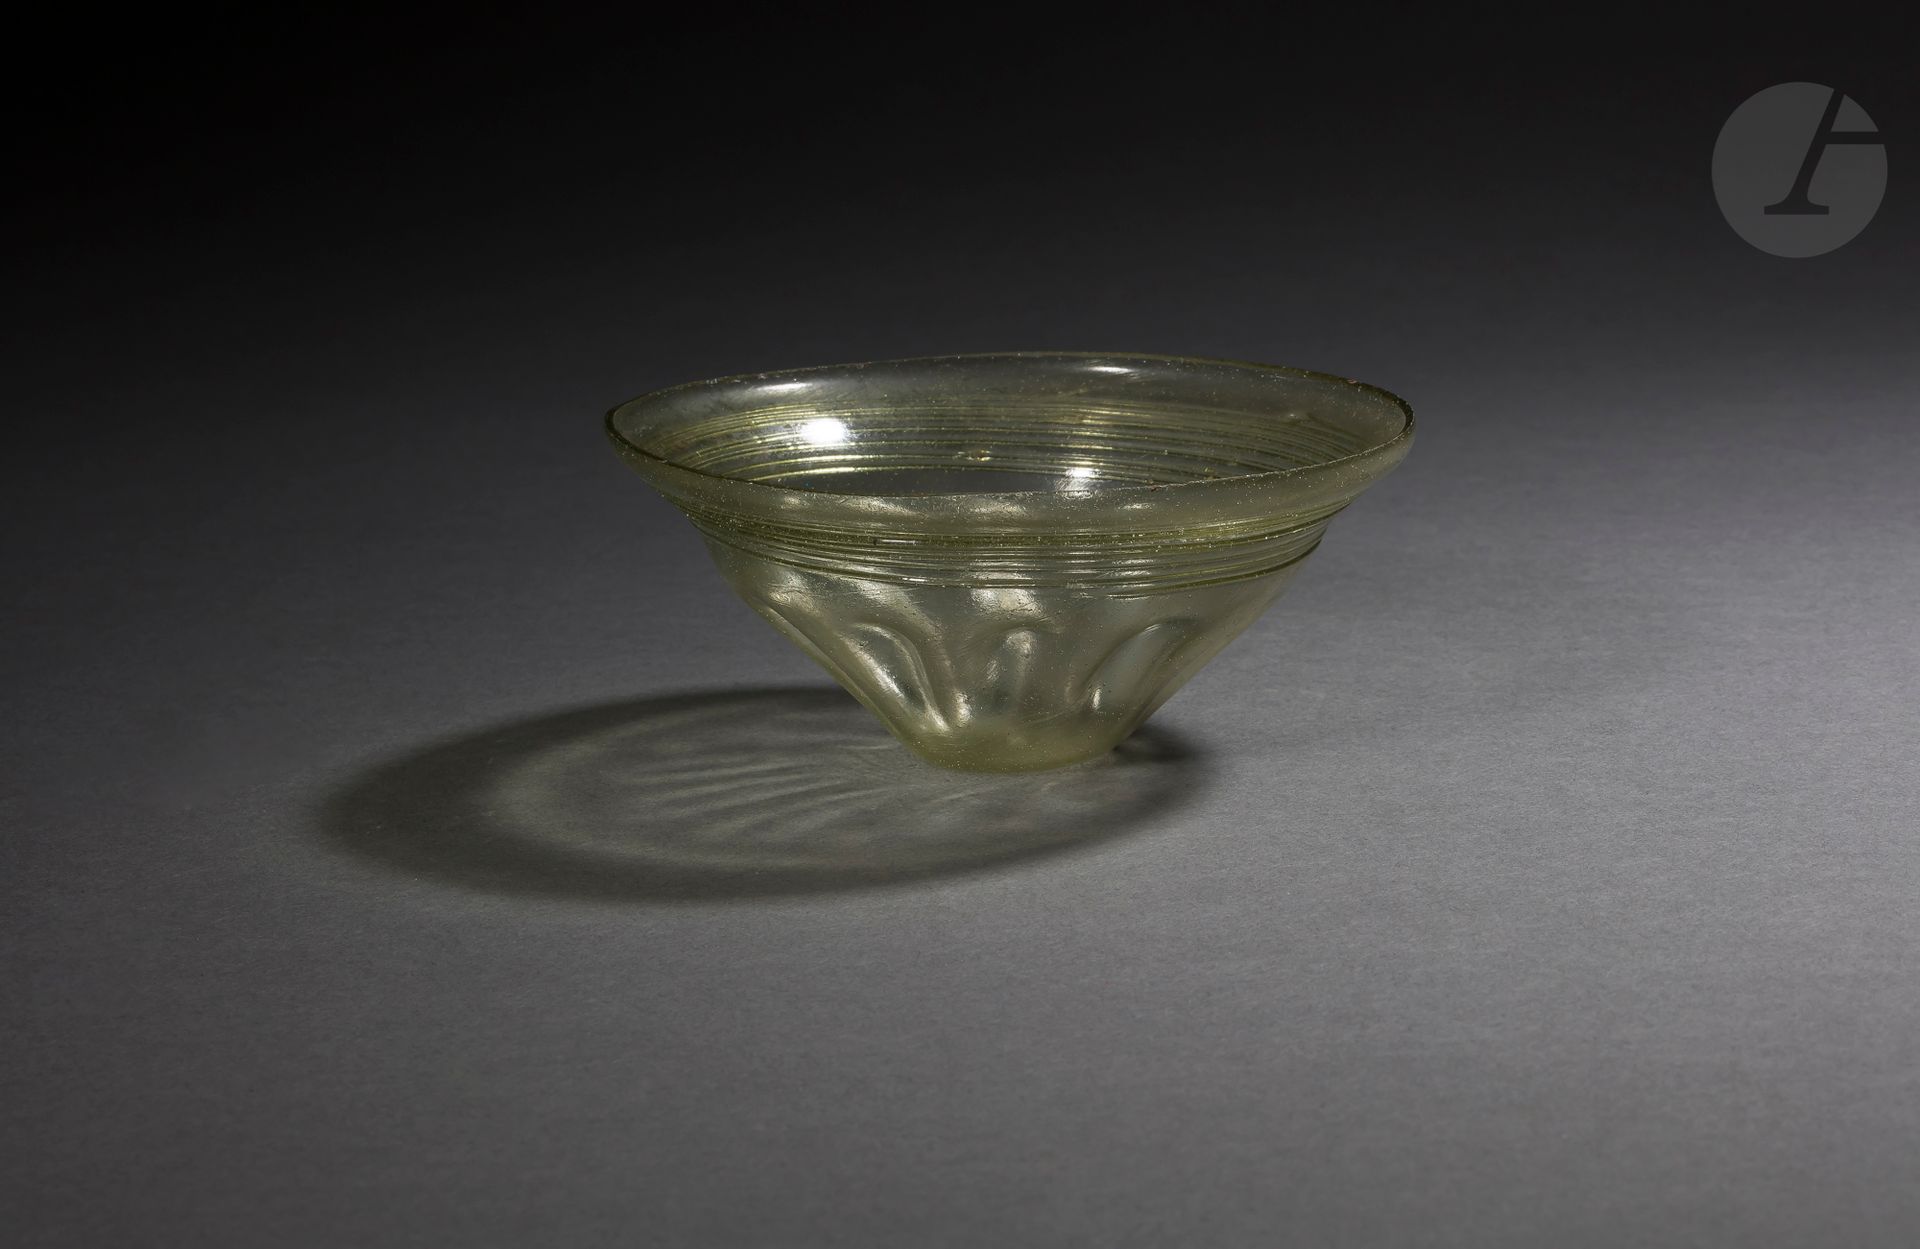 Null 饰有十个凹陷的平底锥形碗 
被应用的网所超越。
略带橄榄色的玻璃。完好无损。 
早期法兰克语，4世纪末。
高度：6厘米；直径：12.4厘米

出处。 &hellip;